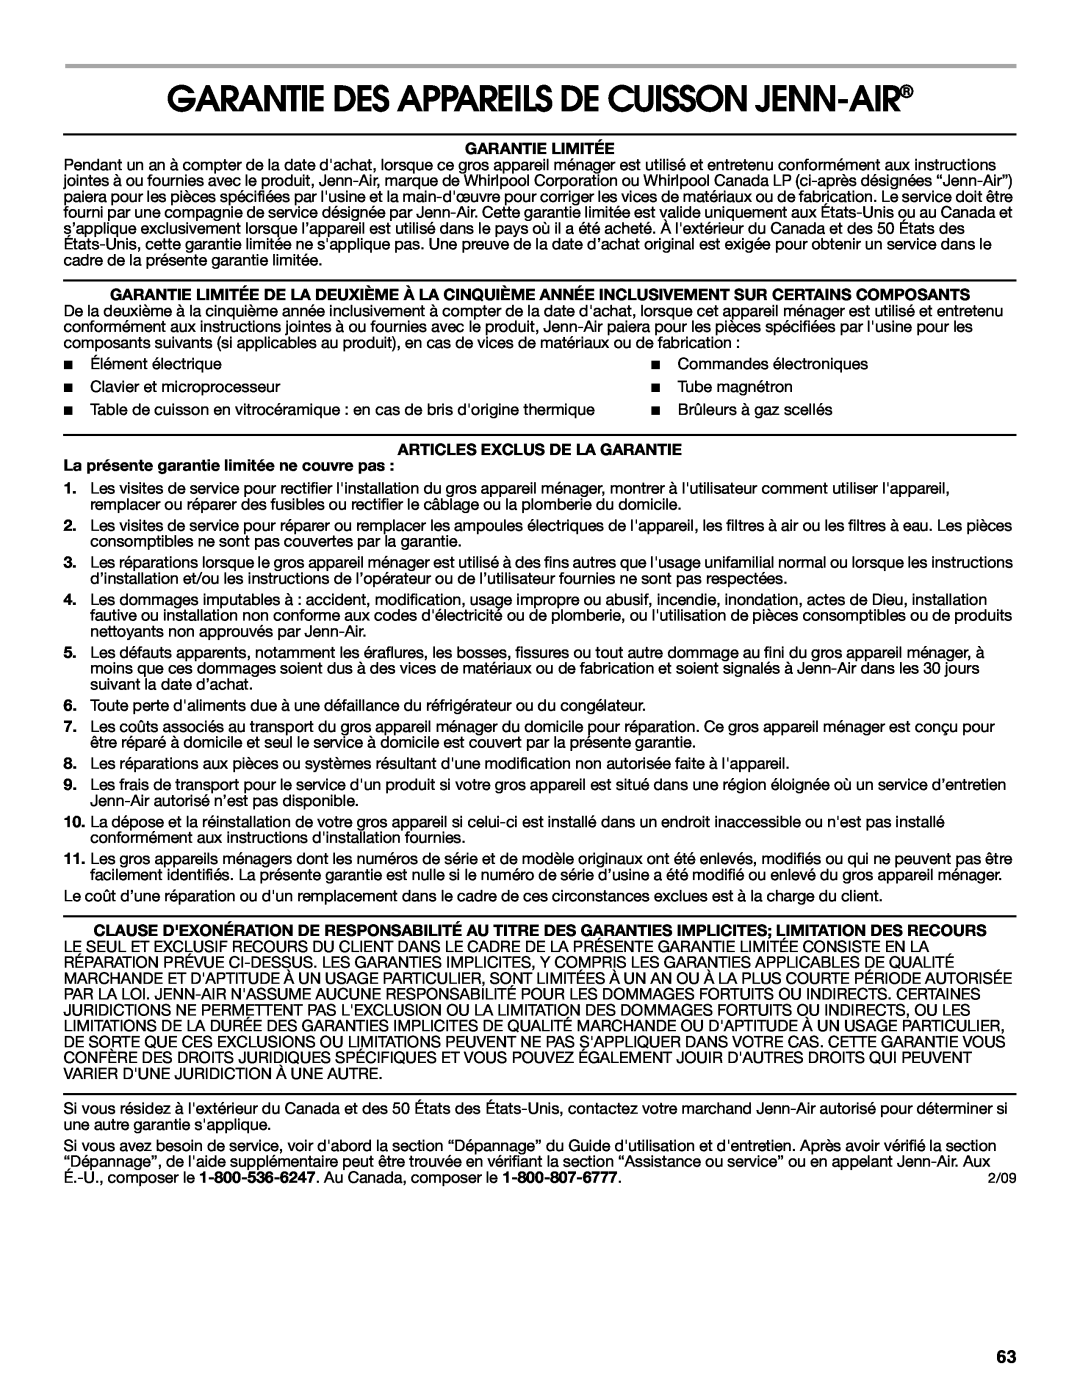 Jenn-Air JGS8860, JGS8850 Garantie Des Appareils De Cuisson Jenn-Air, Garantie Limitée, Articles Exclus De La Garantie 